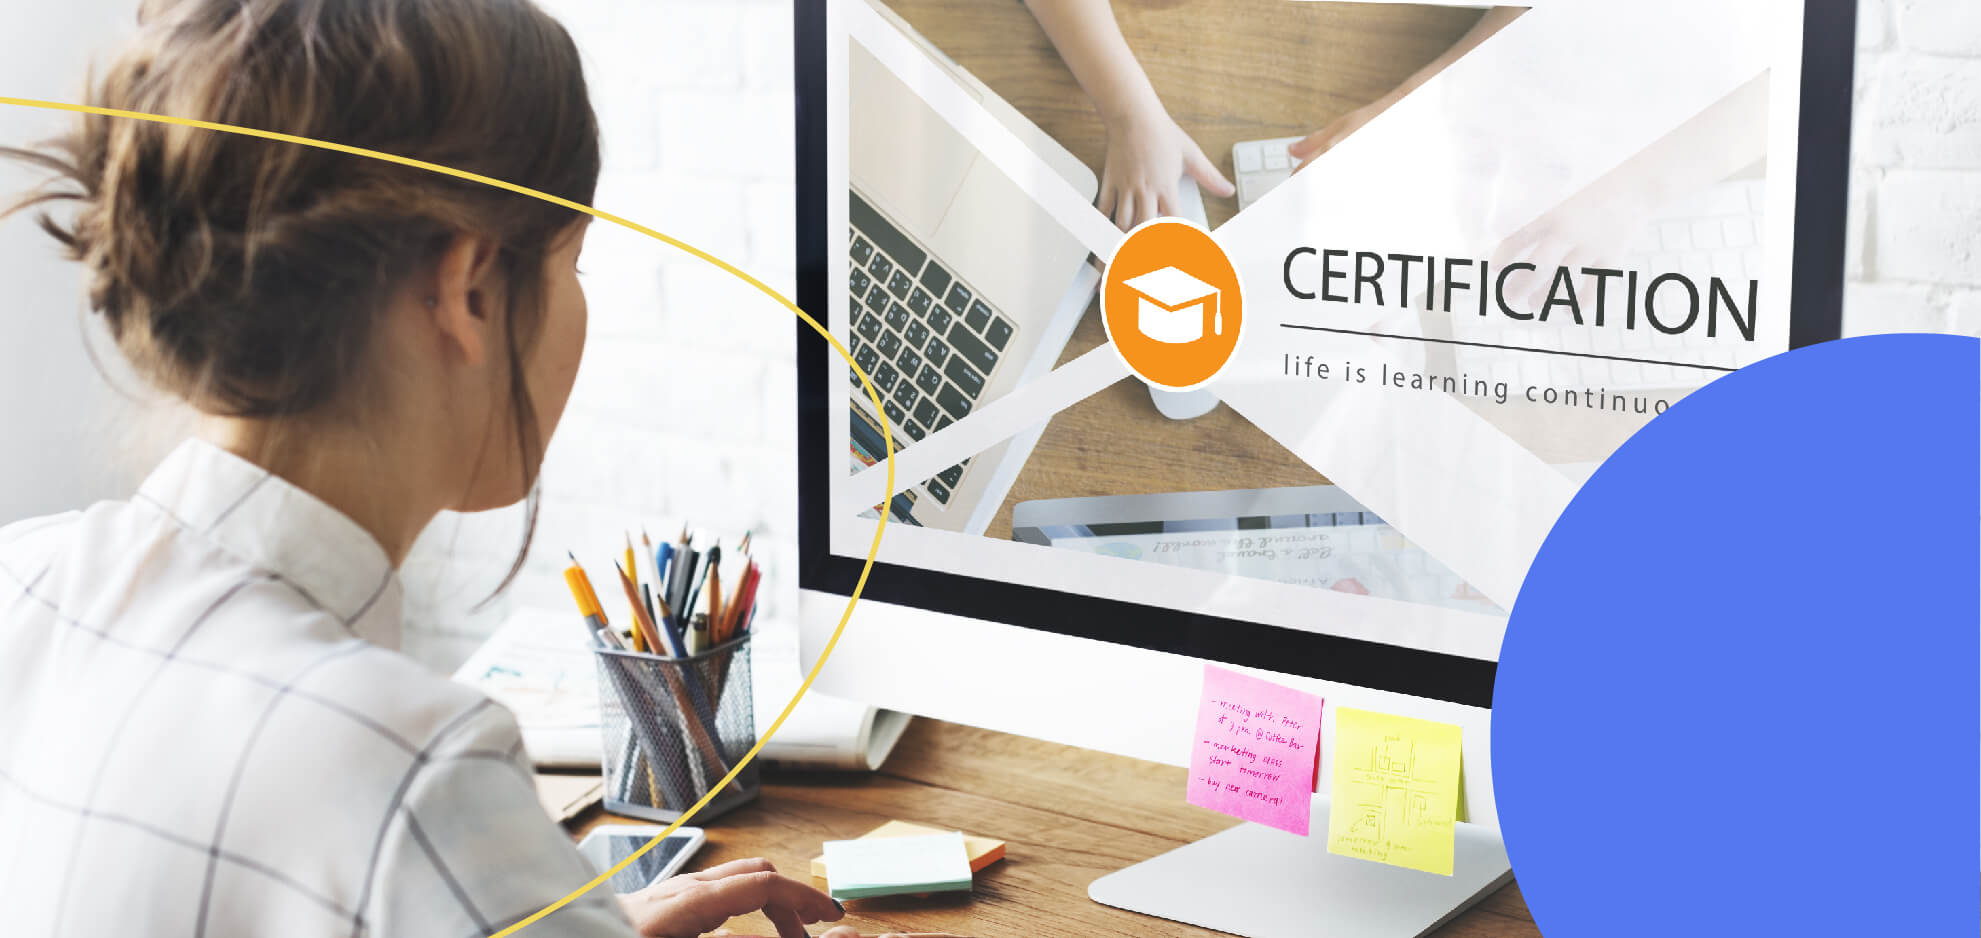 10 Best Project Management Certifications